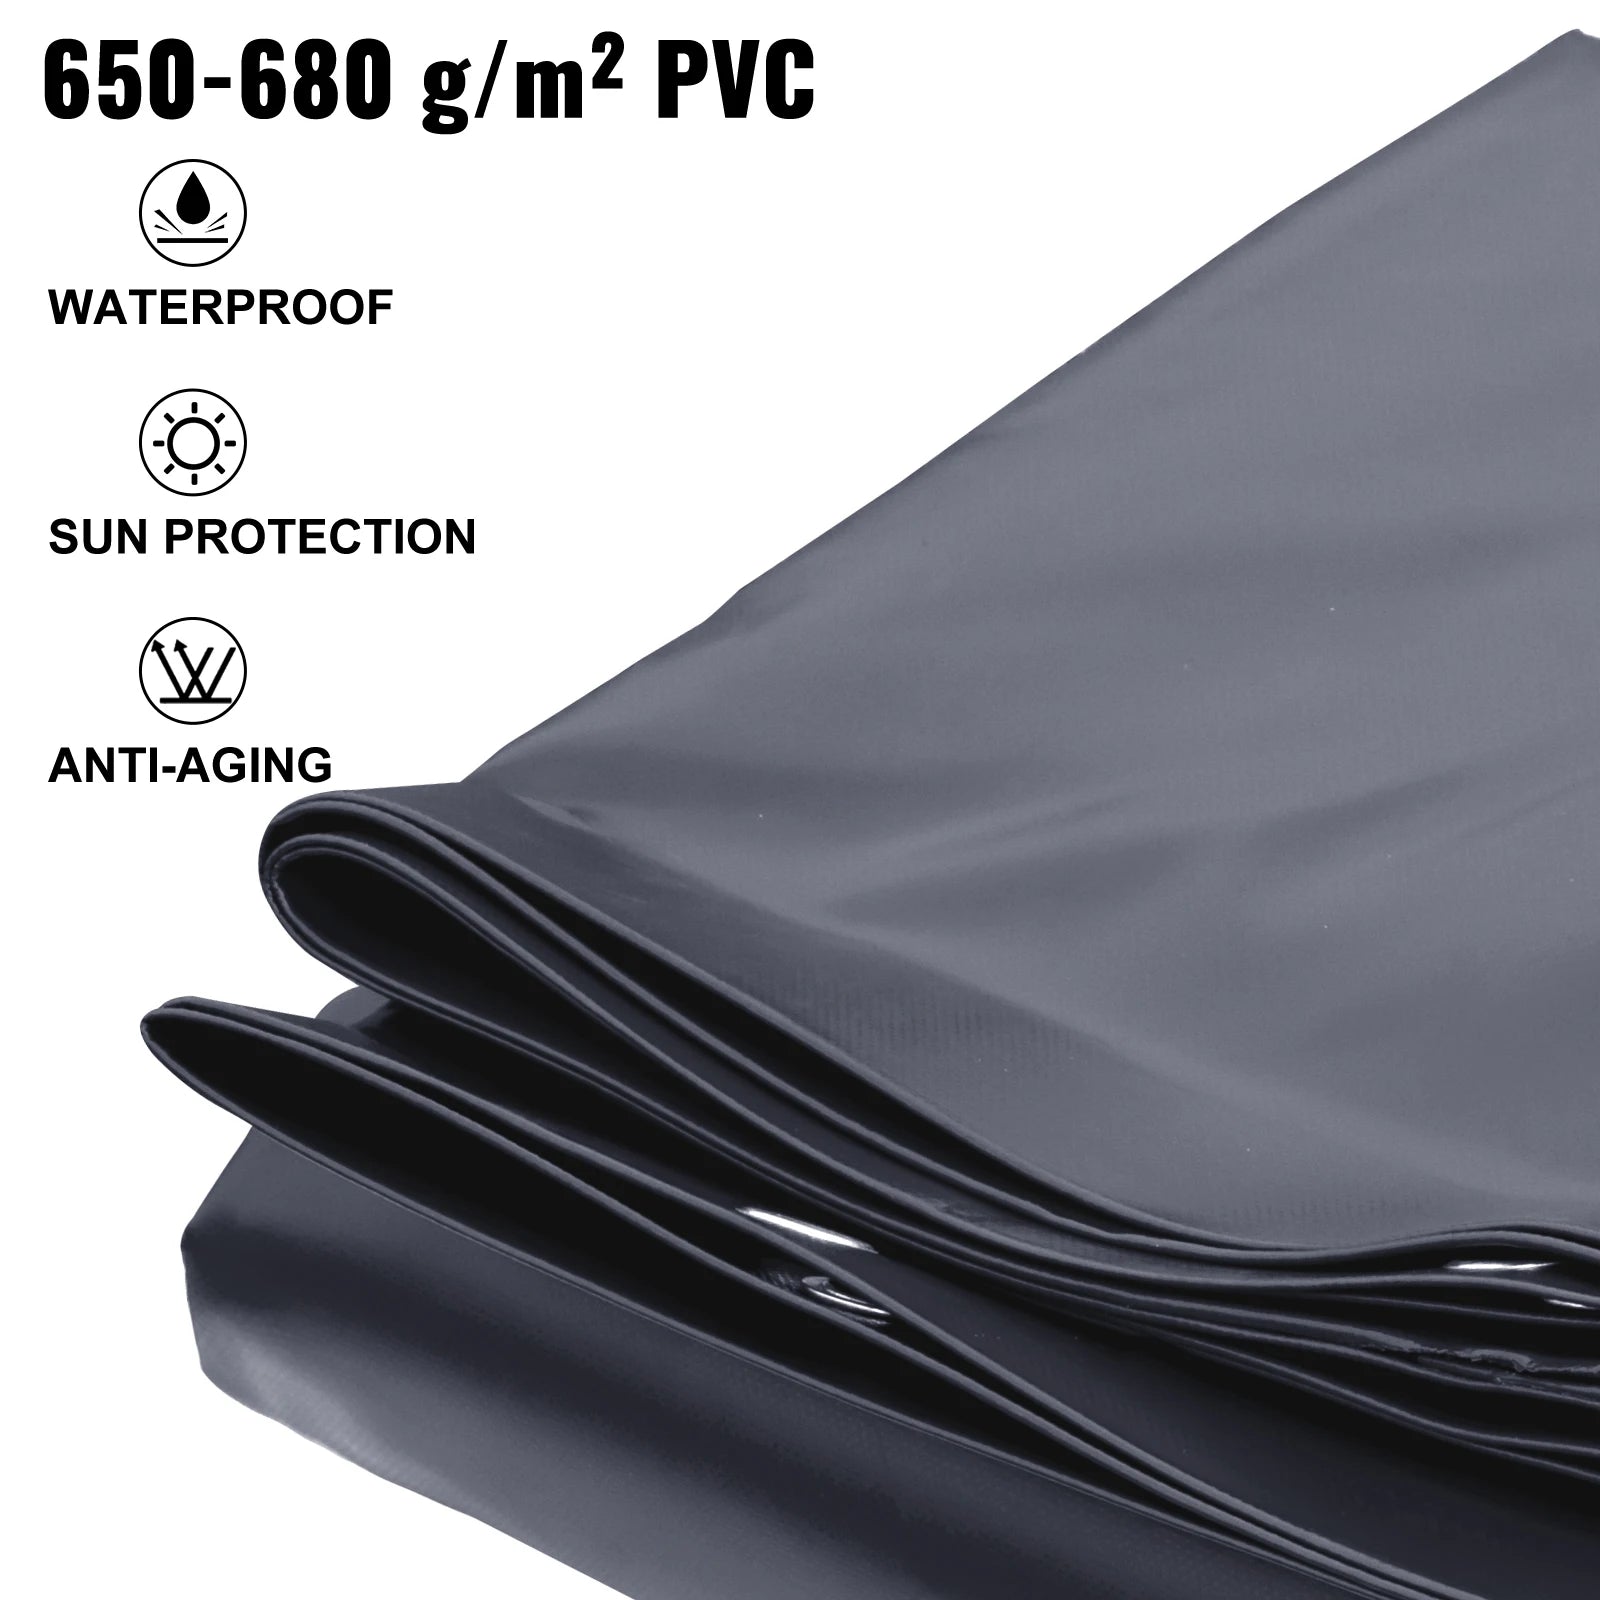 Husă de siguranță pentru piscină, material PVC, protecție pentru iarnă